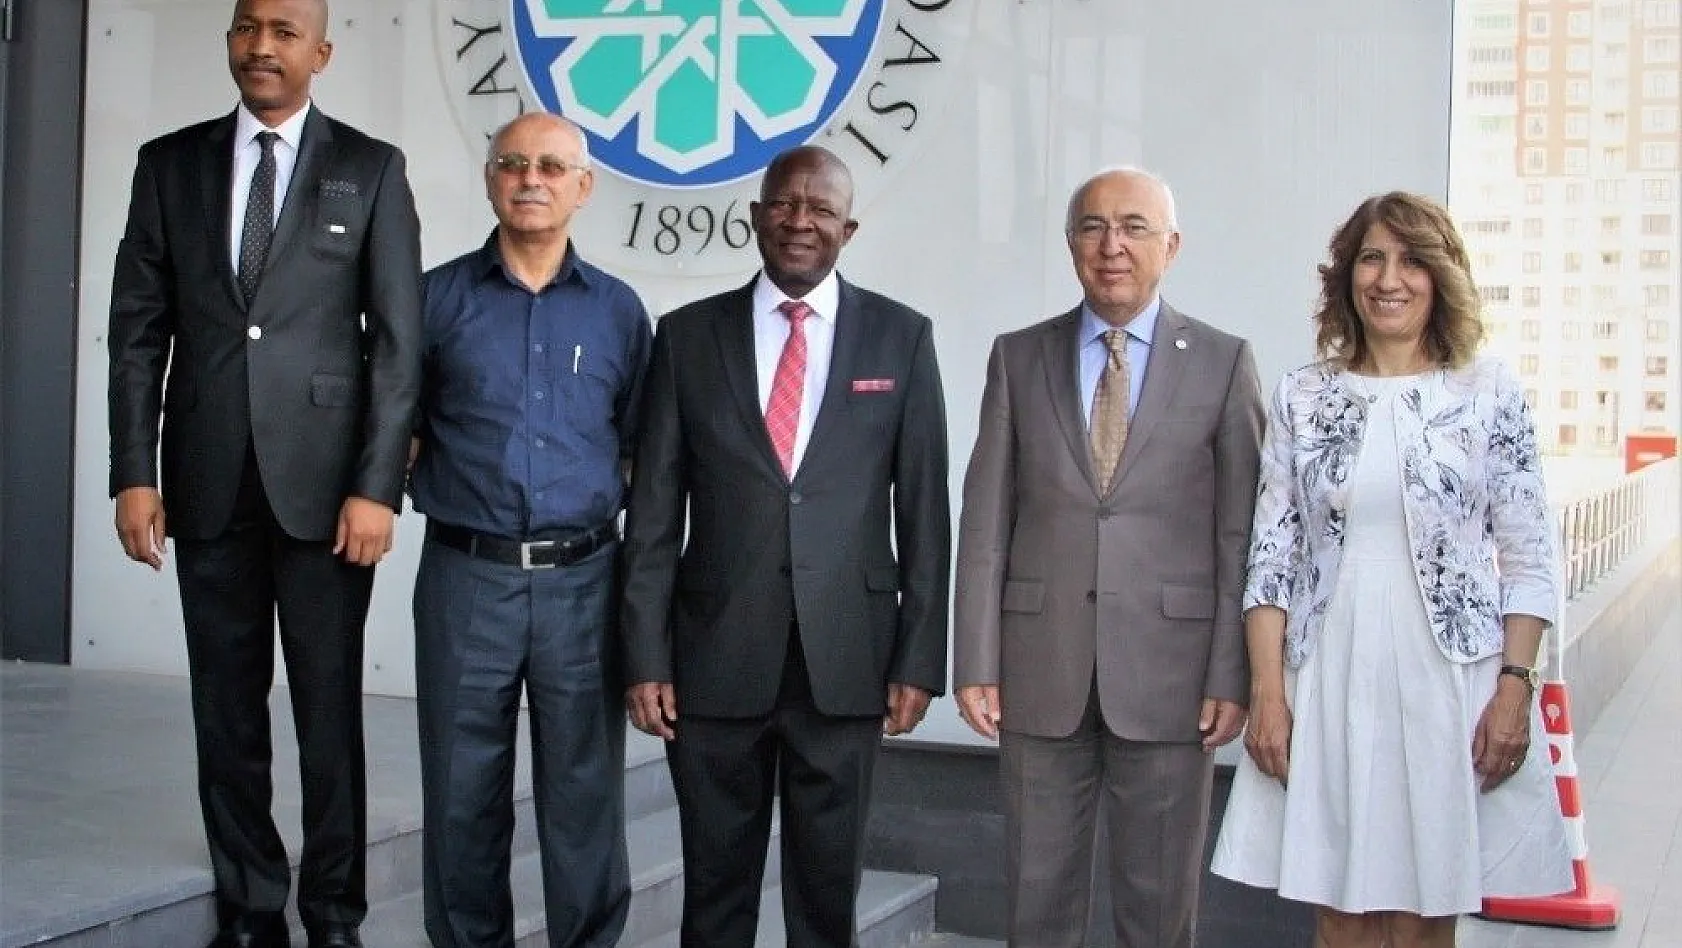 Güney Afrika Cumhuriyeti Heyeti'nden KTO'ya Ziyaret
